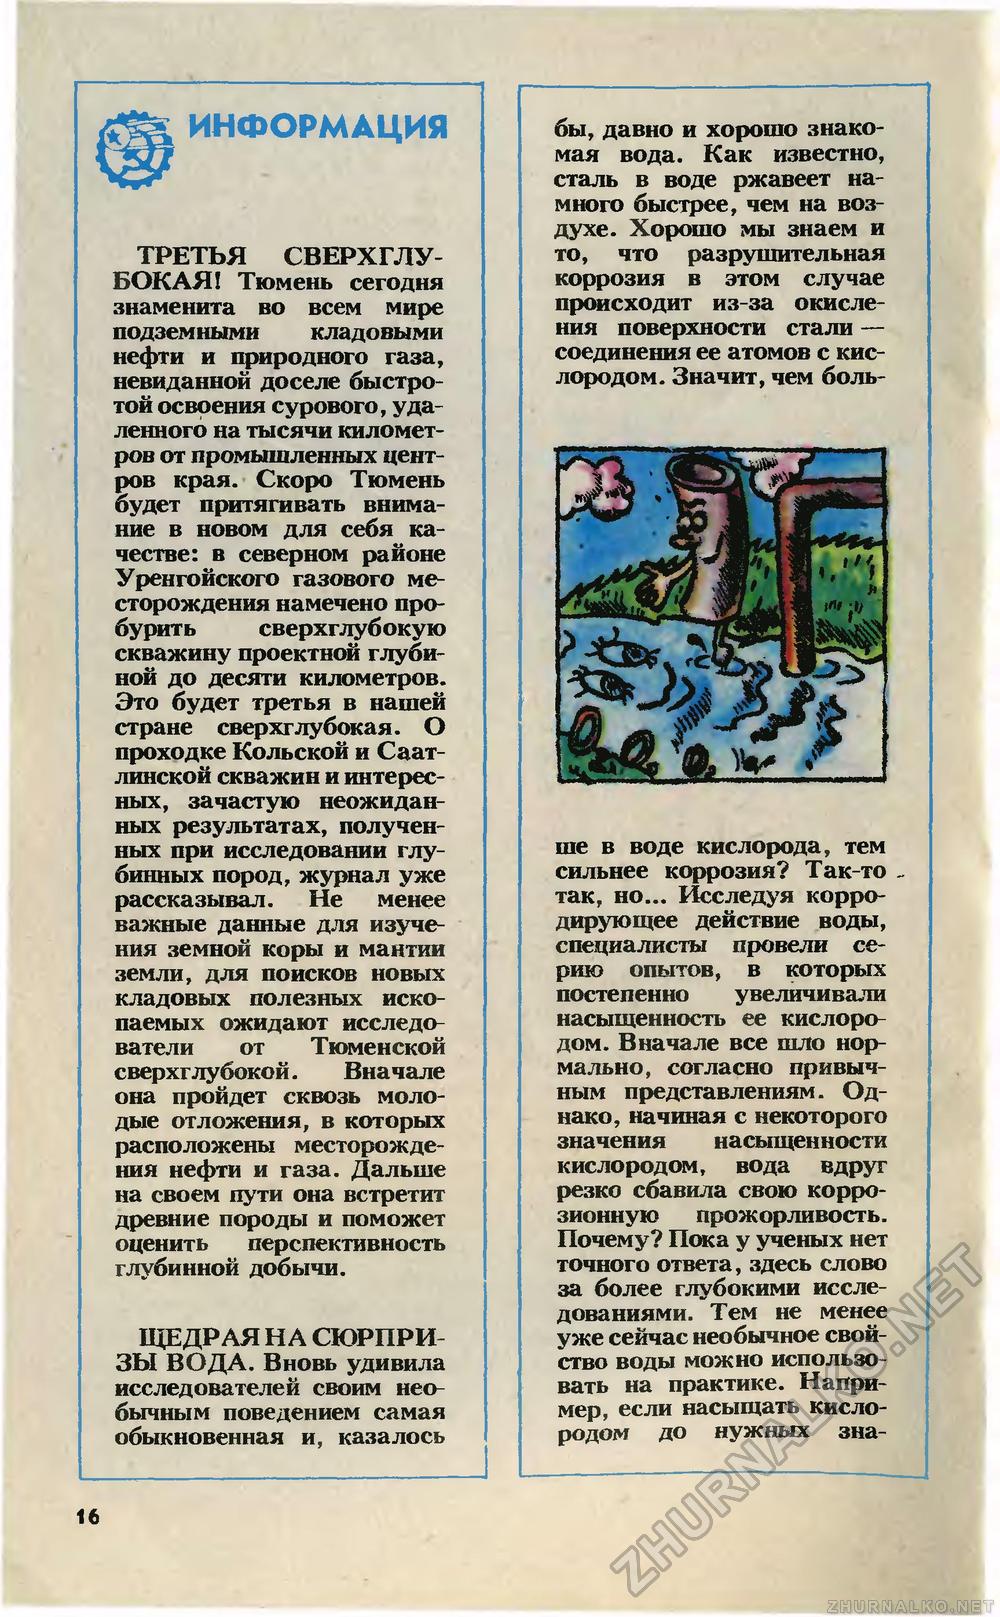   1985-03,  18